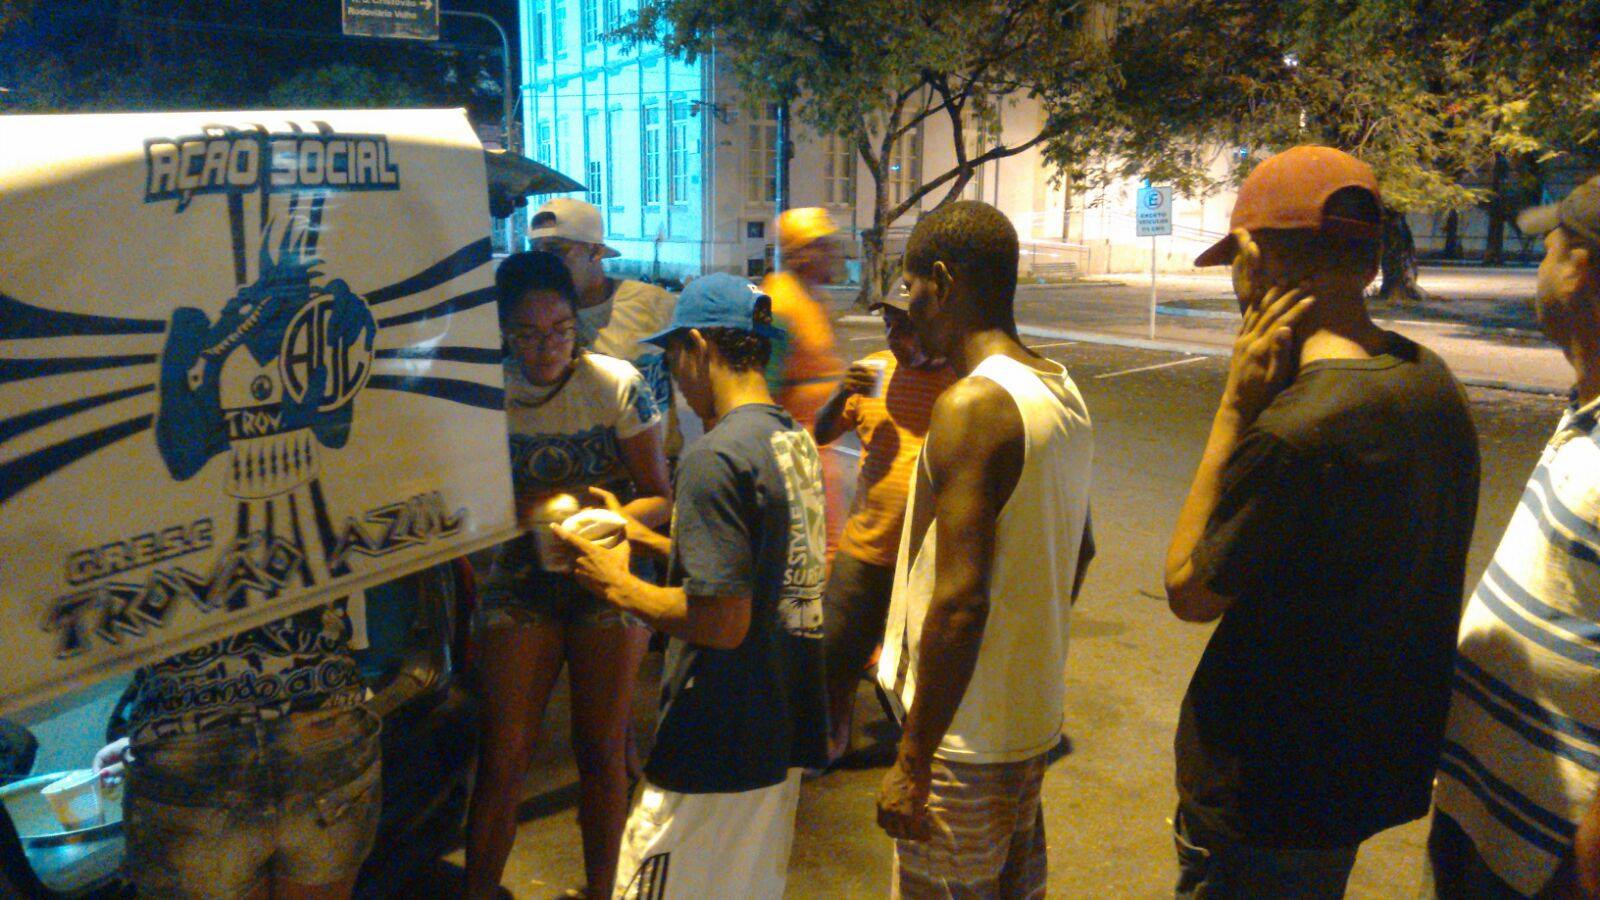 Torcida Trovão Azul distribuiu alimentos para os moradores de rua de Aracaju.